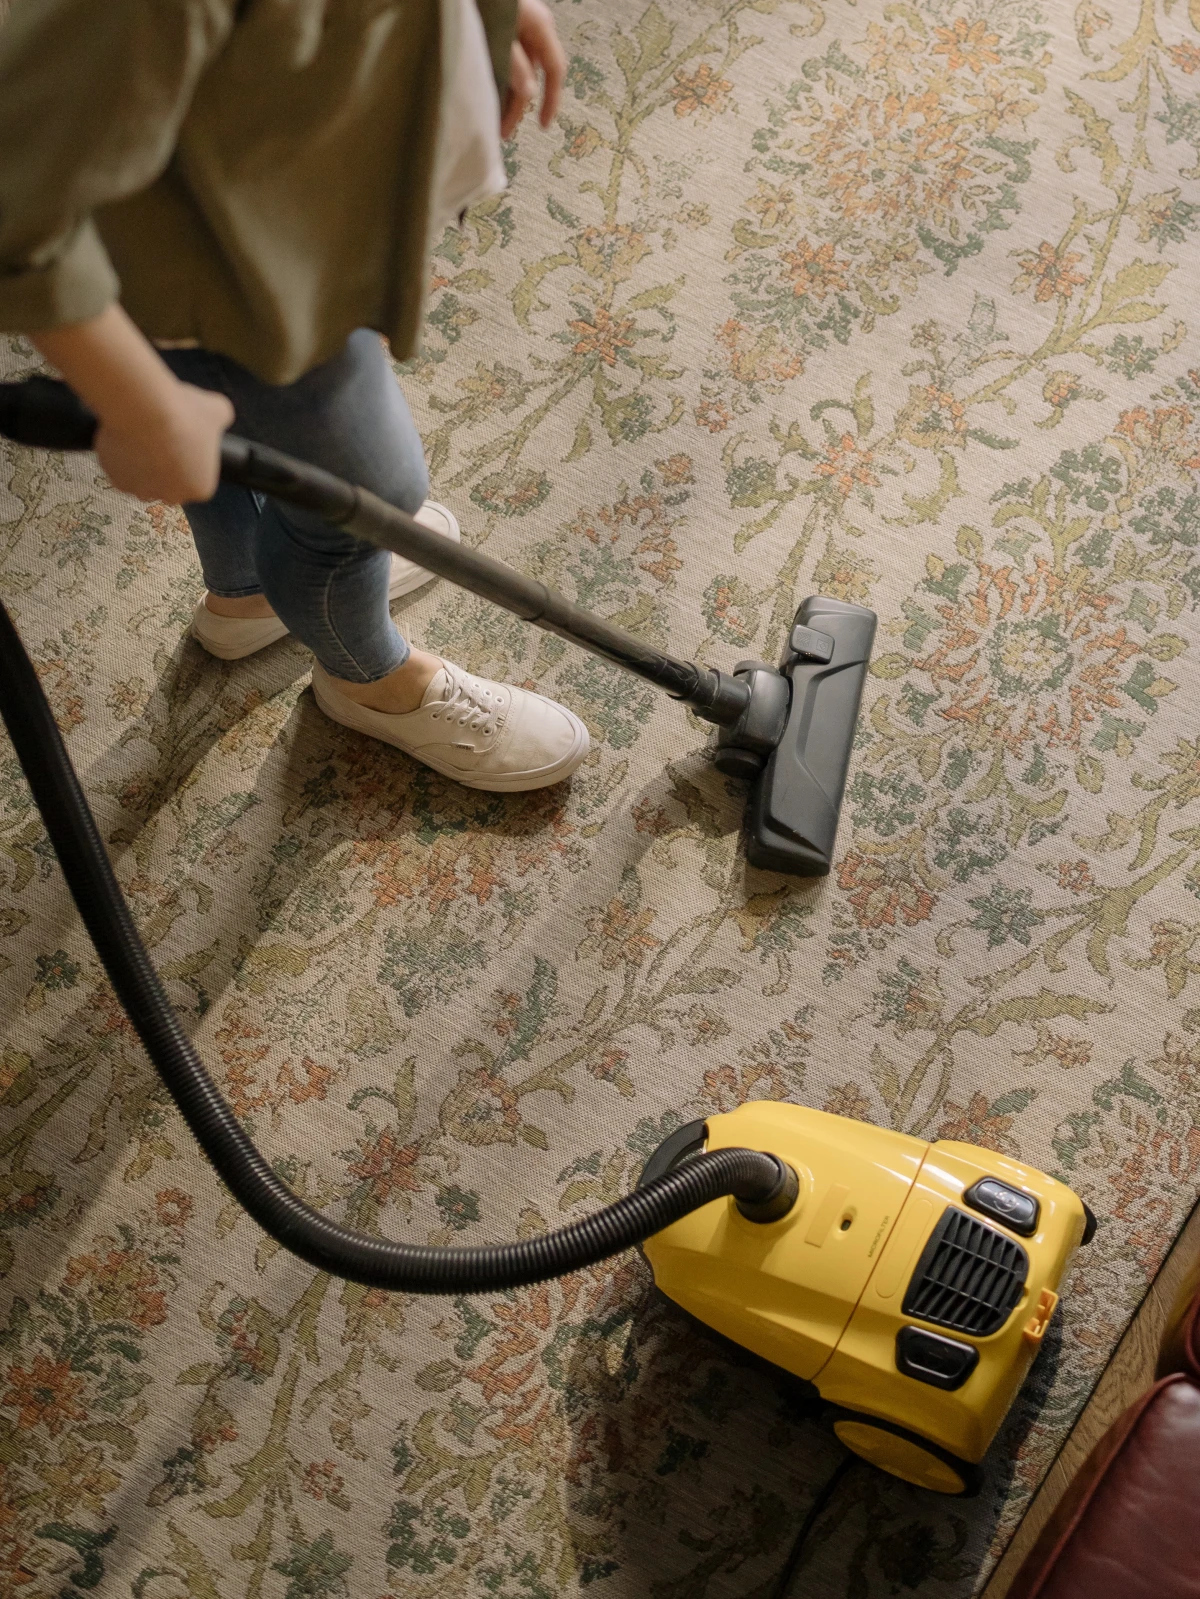 vacuuming the carpet